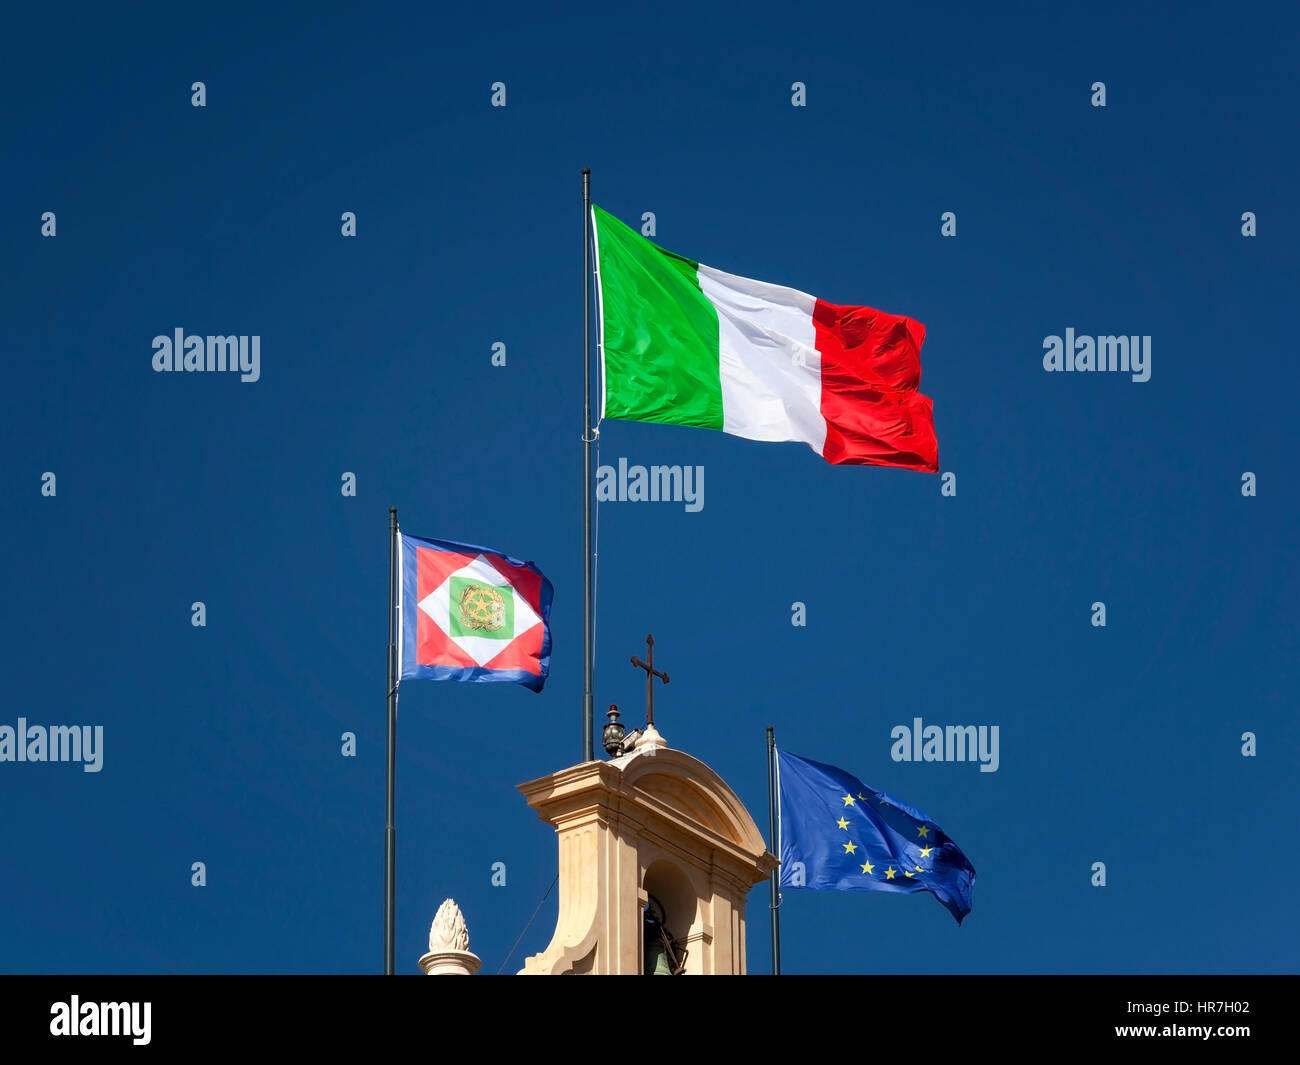 Drapeau Italien affiche sur le clocher de l'Quirinal, avec l'élection présidentielle et le drapeau de l'Union européenne. Je vois des drapeaux italien Banque D'Images